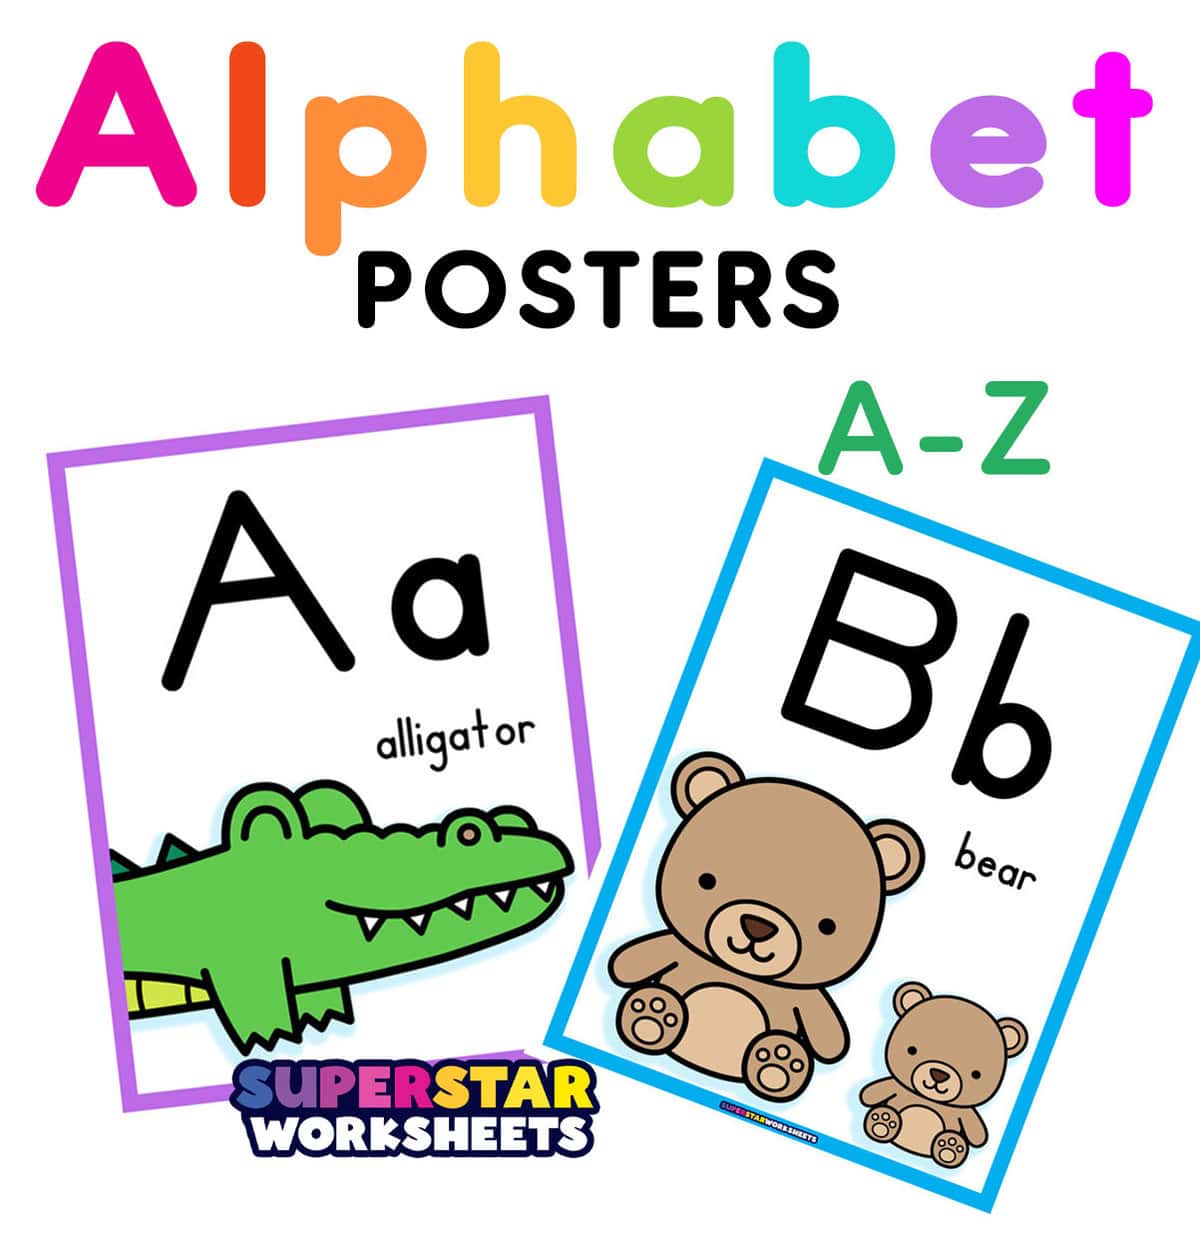 Alphabet Posters - Superstar Worksheets